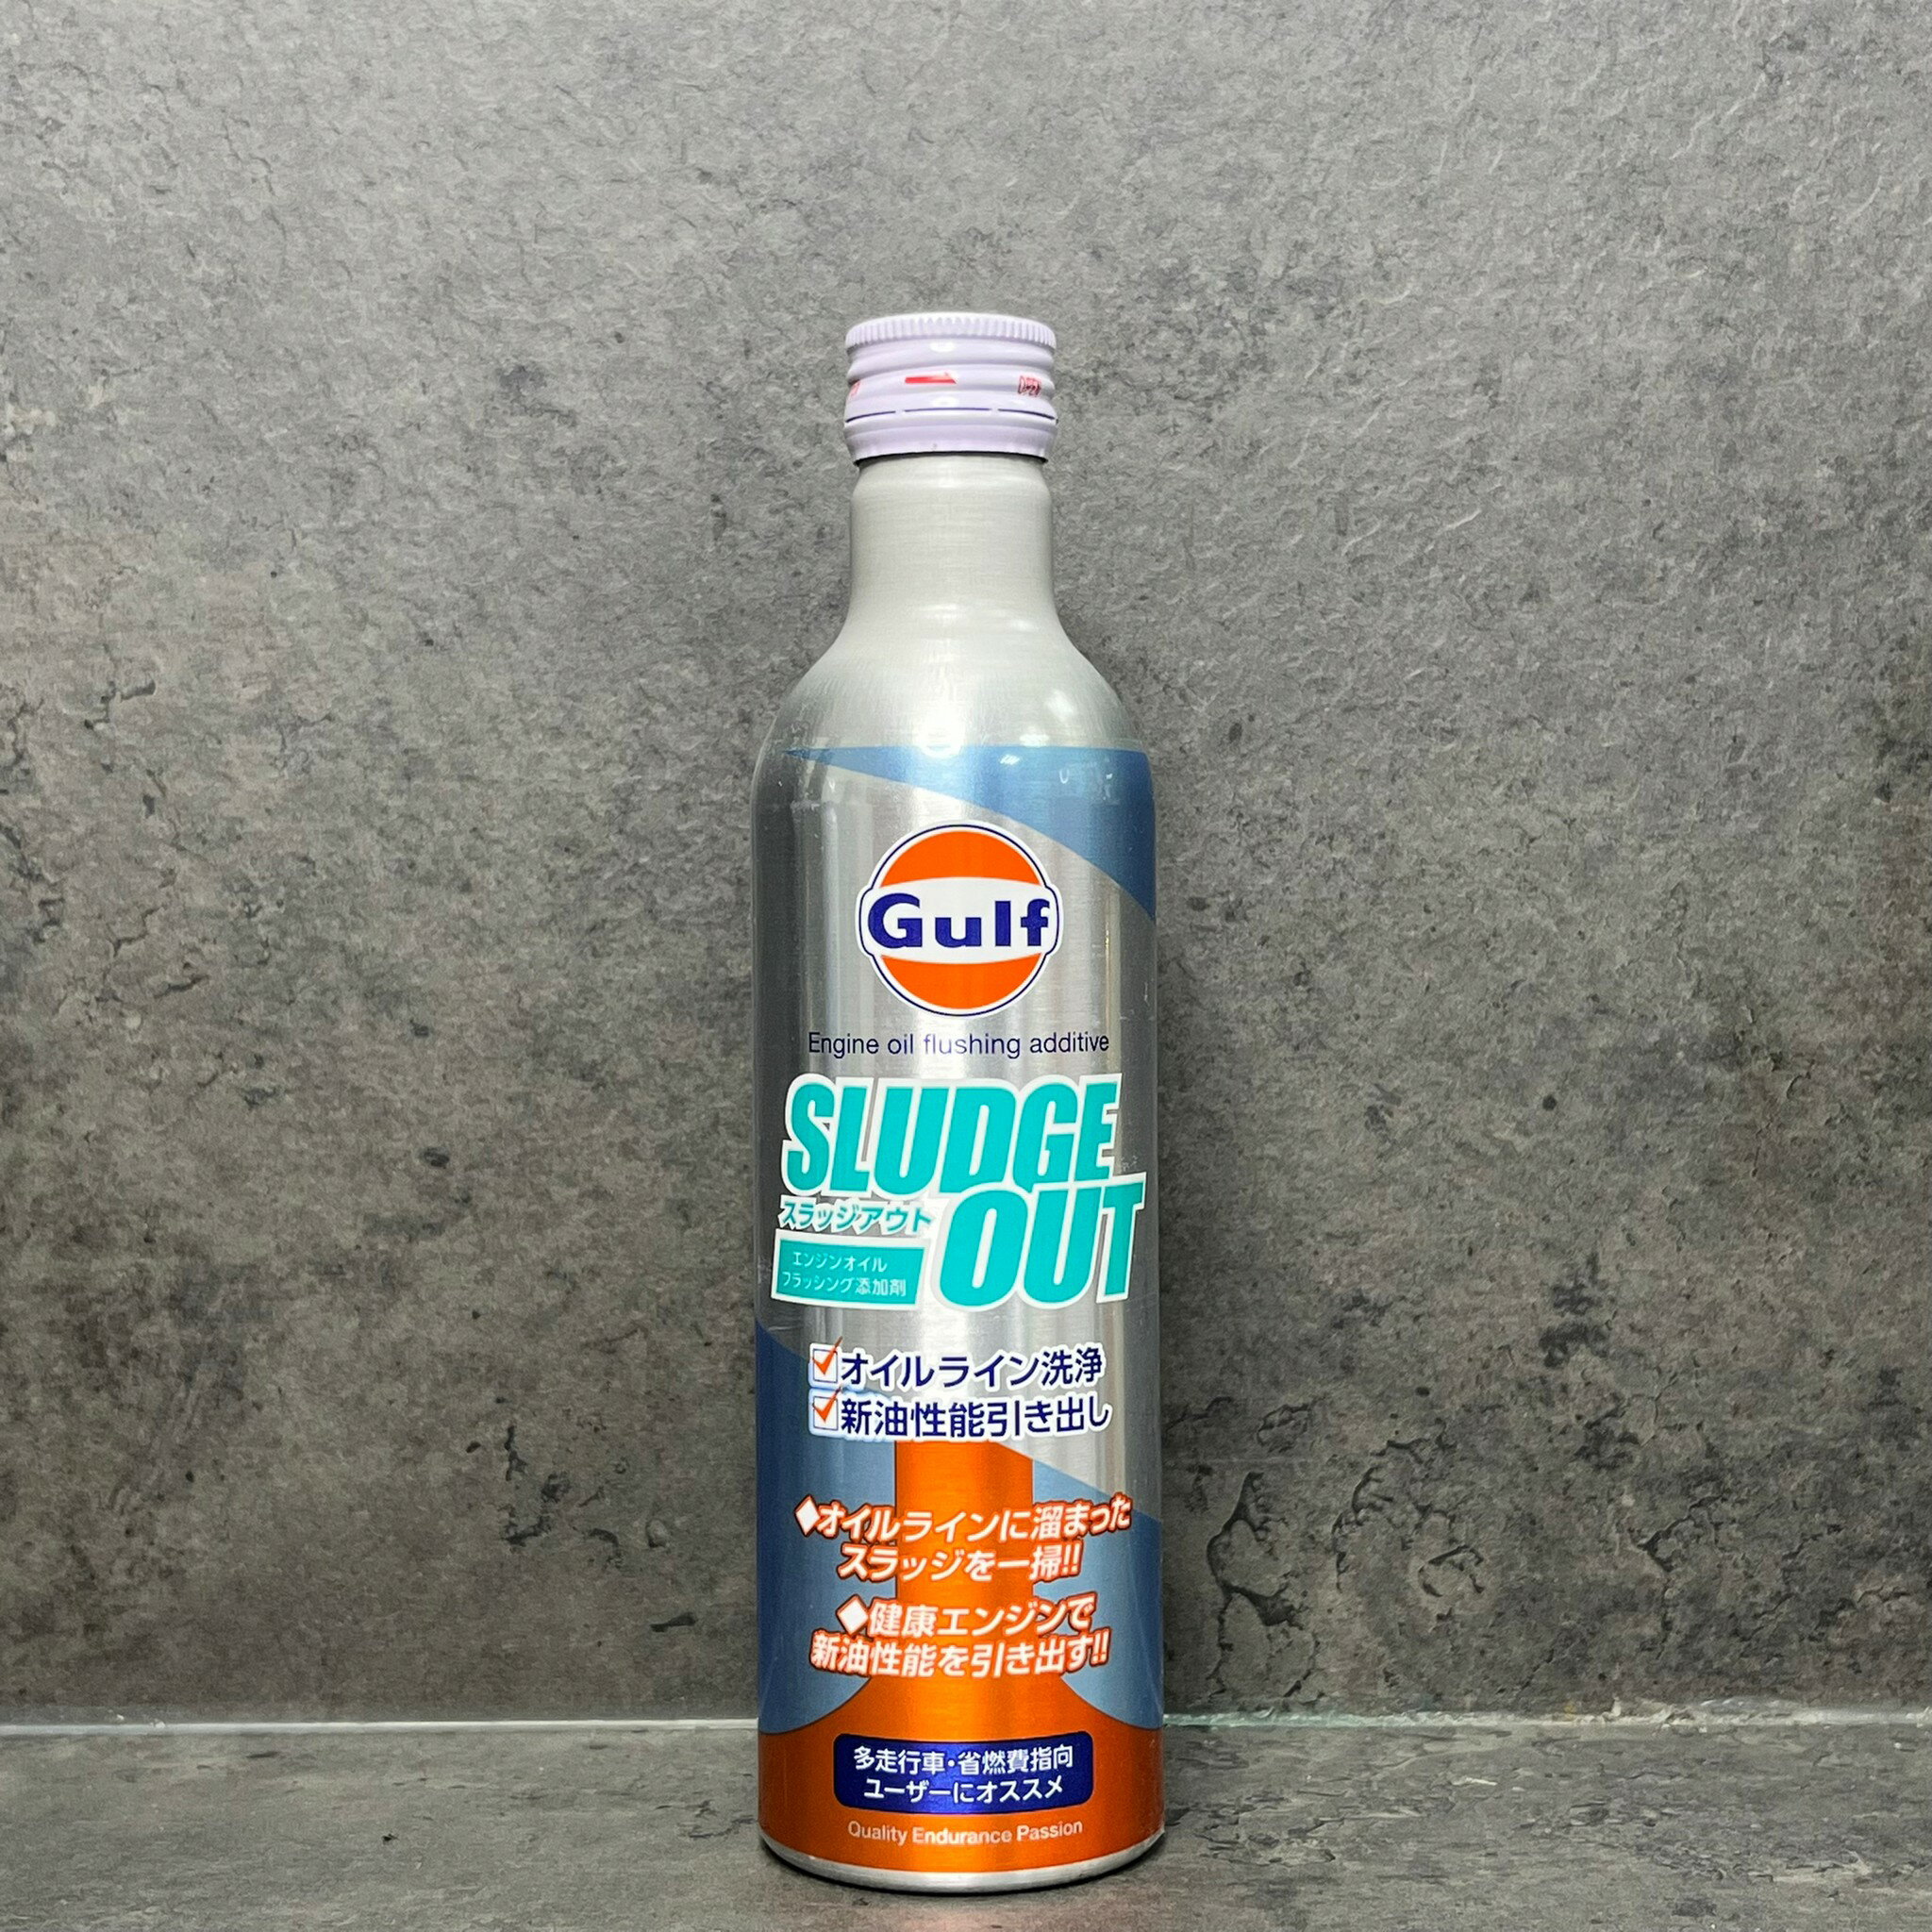 日本製 海灣 GULF 油泥清洗劑 SLUDGE OUT 恢復性能 高清潔性 不傷油封 引擎專用清淨劑【引擎內部洗淨】